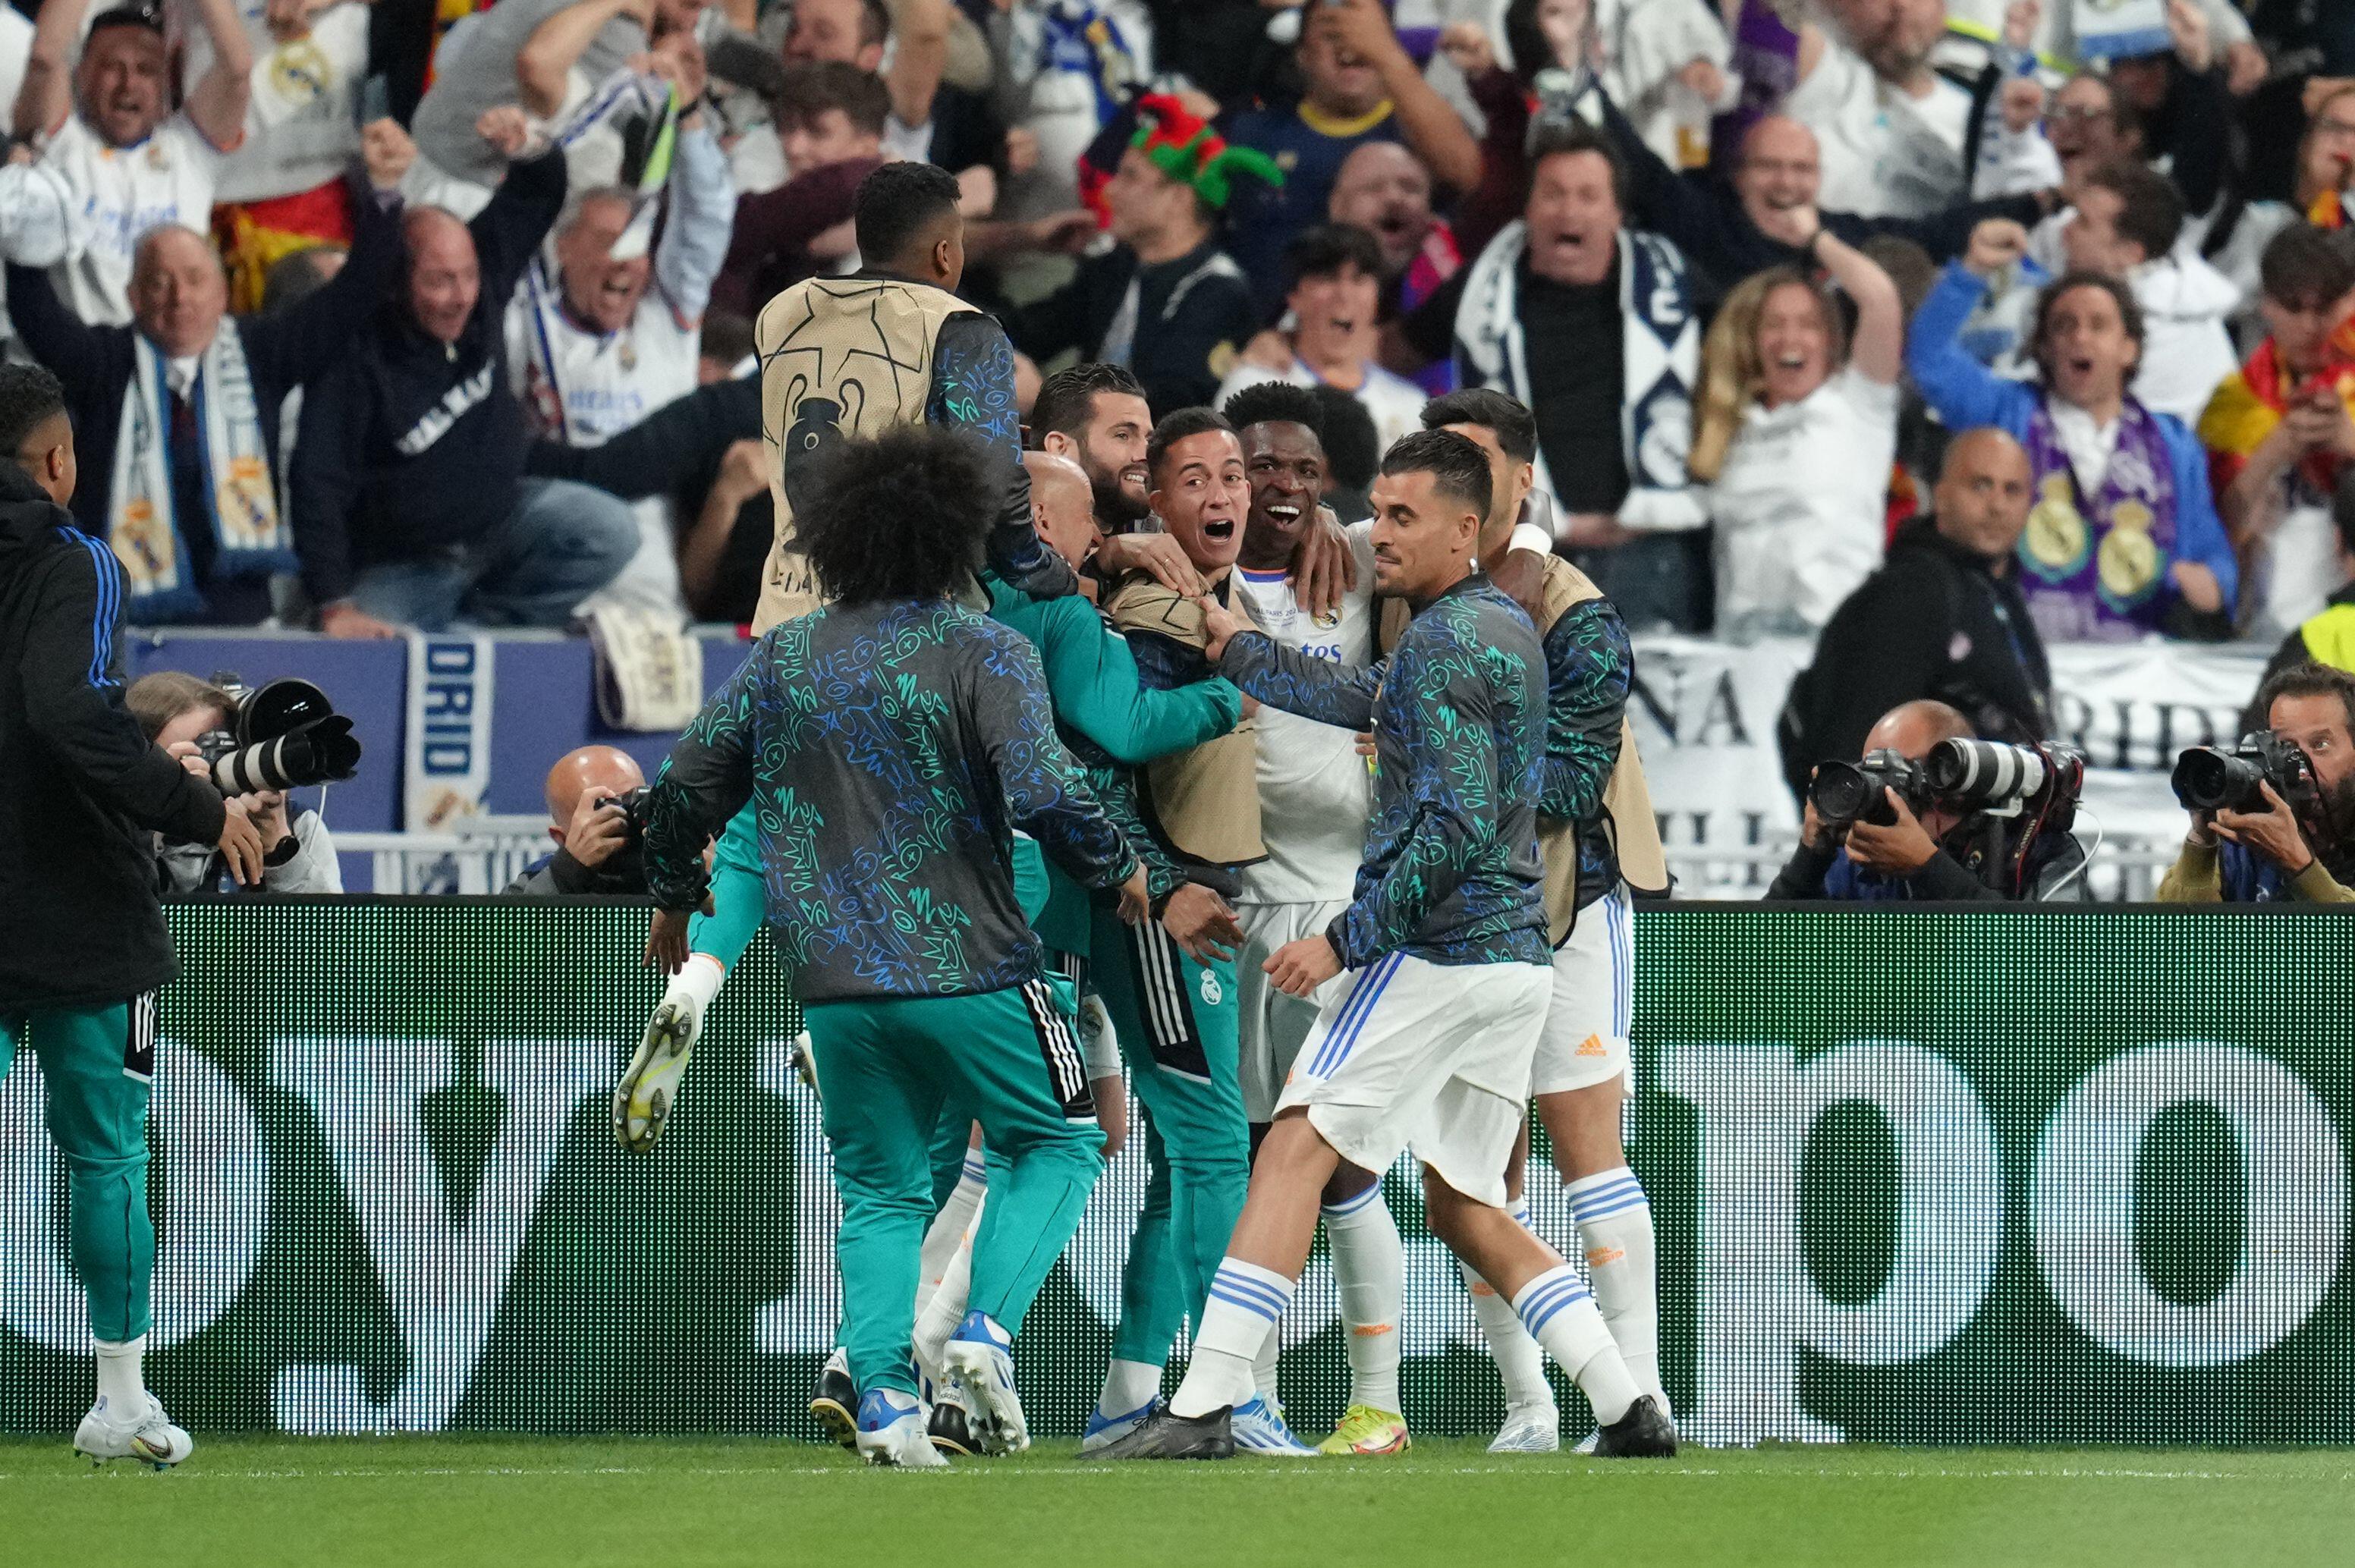 Final Liga Champions UEFA: Real Madrid mengalahkan Liverpool 1-0 untuk memenangkan gelar CHAMPIONS LEAGUE ke-14, Vinicius Junior mencetak gol kemenangan, Tonton HIGHLIGHTS